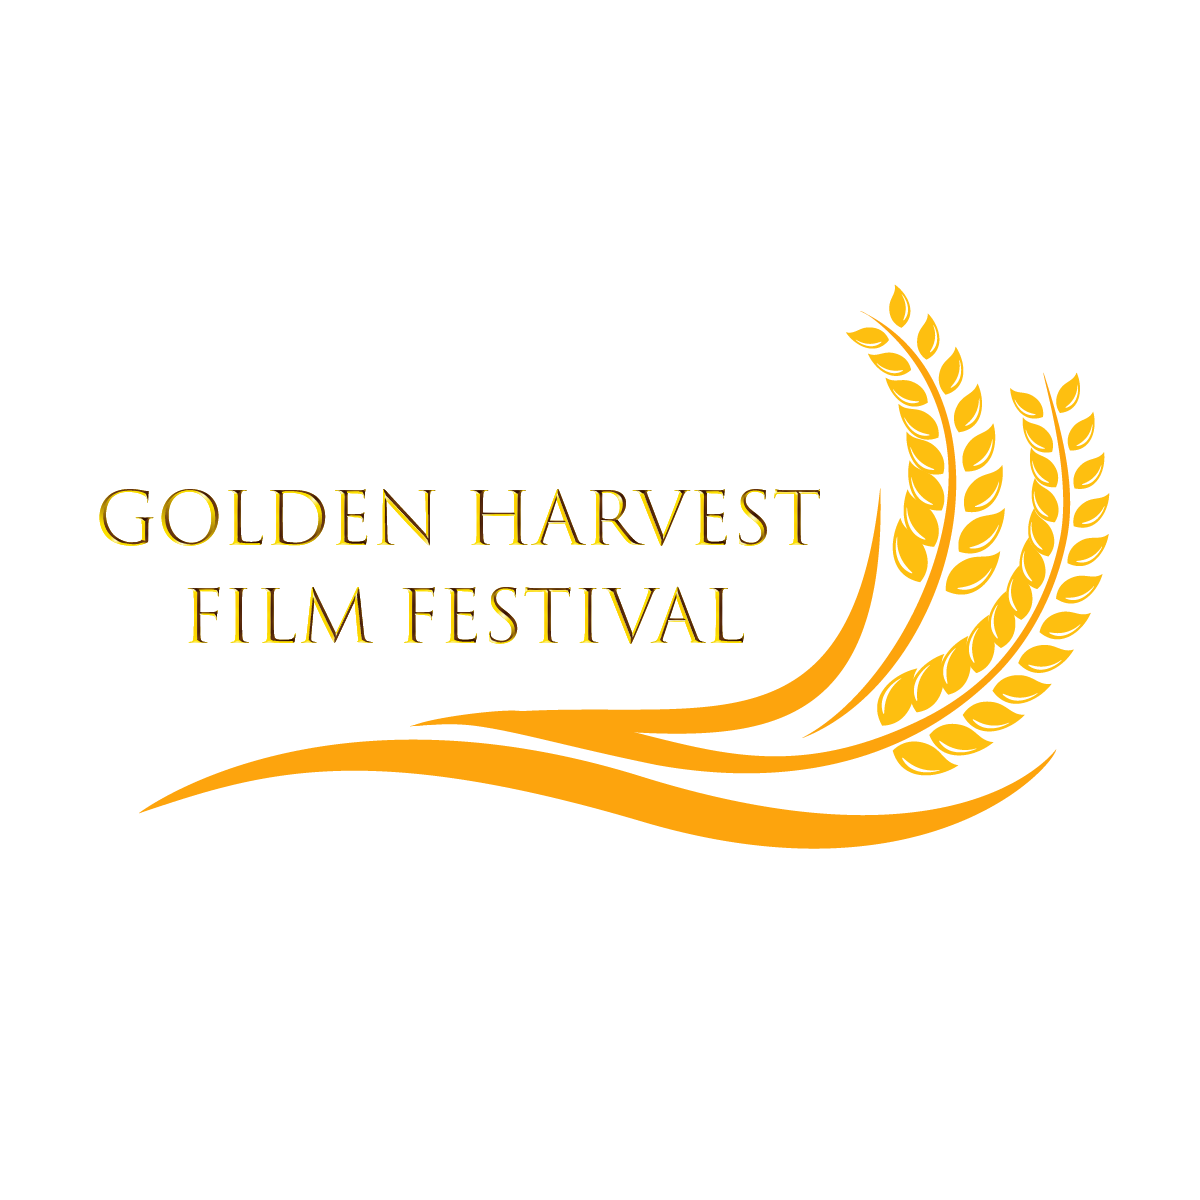 Golden Harvest Film Festival